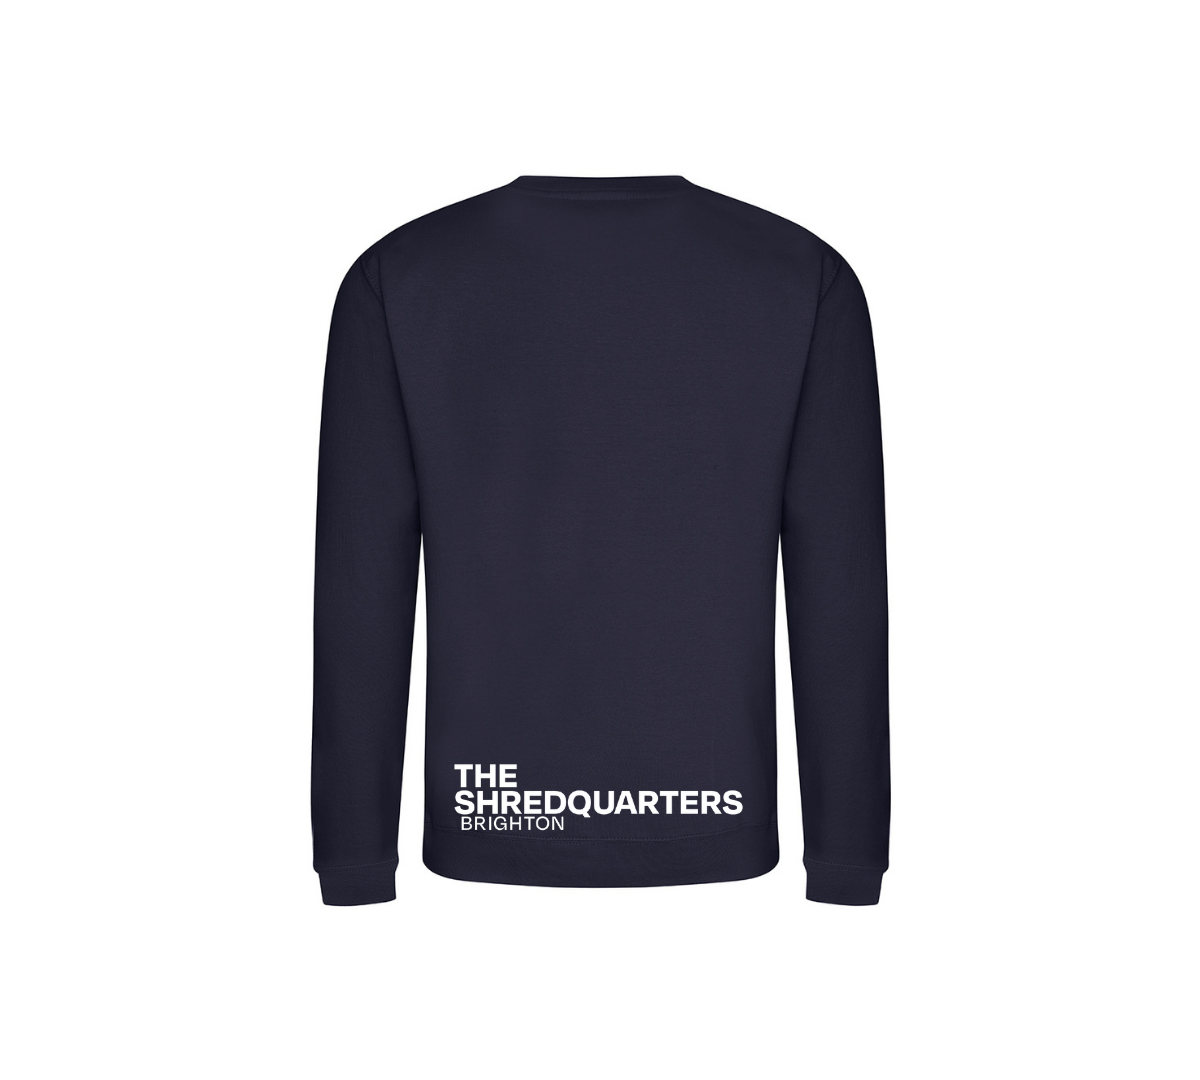 The Shredquarters Brighton Sweater